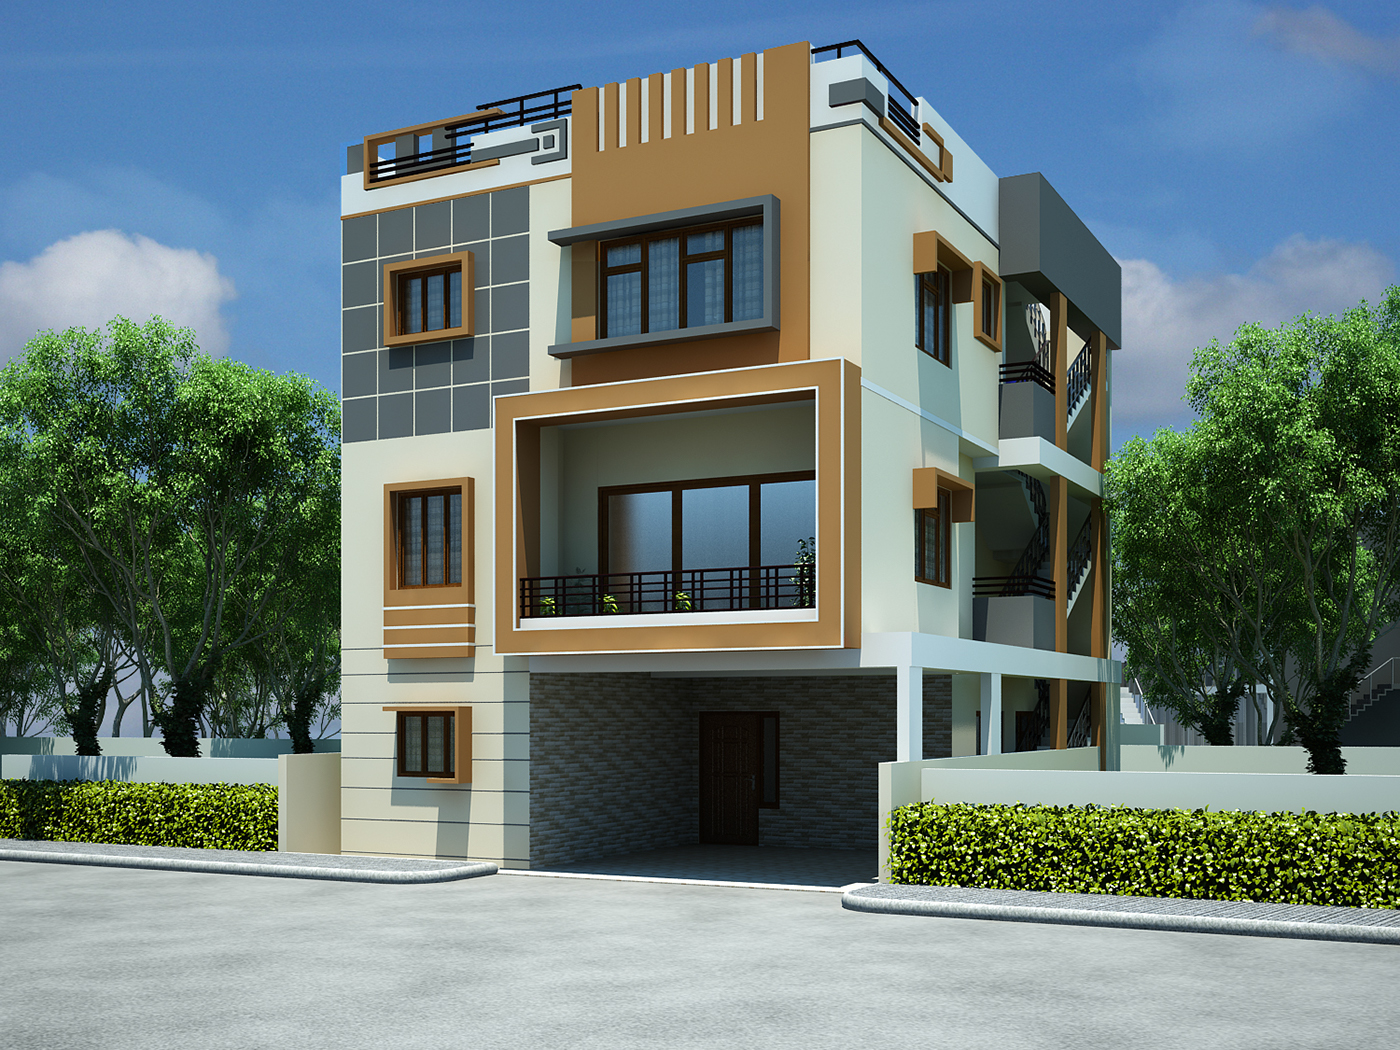  Design Home 3D 5 Kerala style house 3D models House Design Plans 